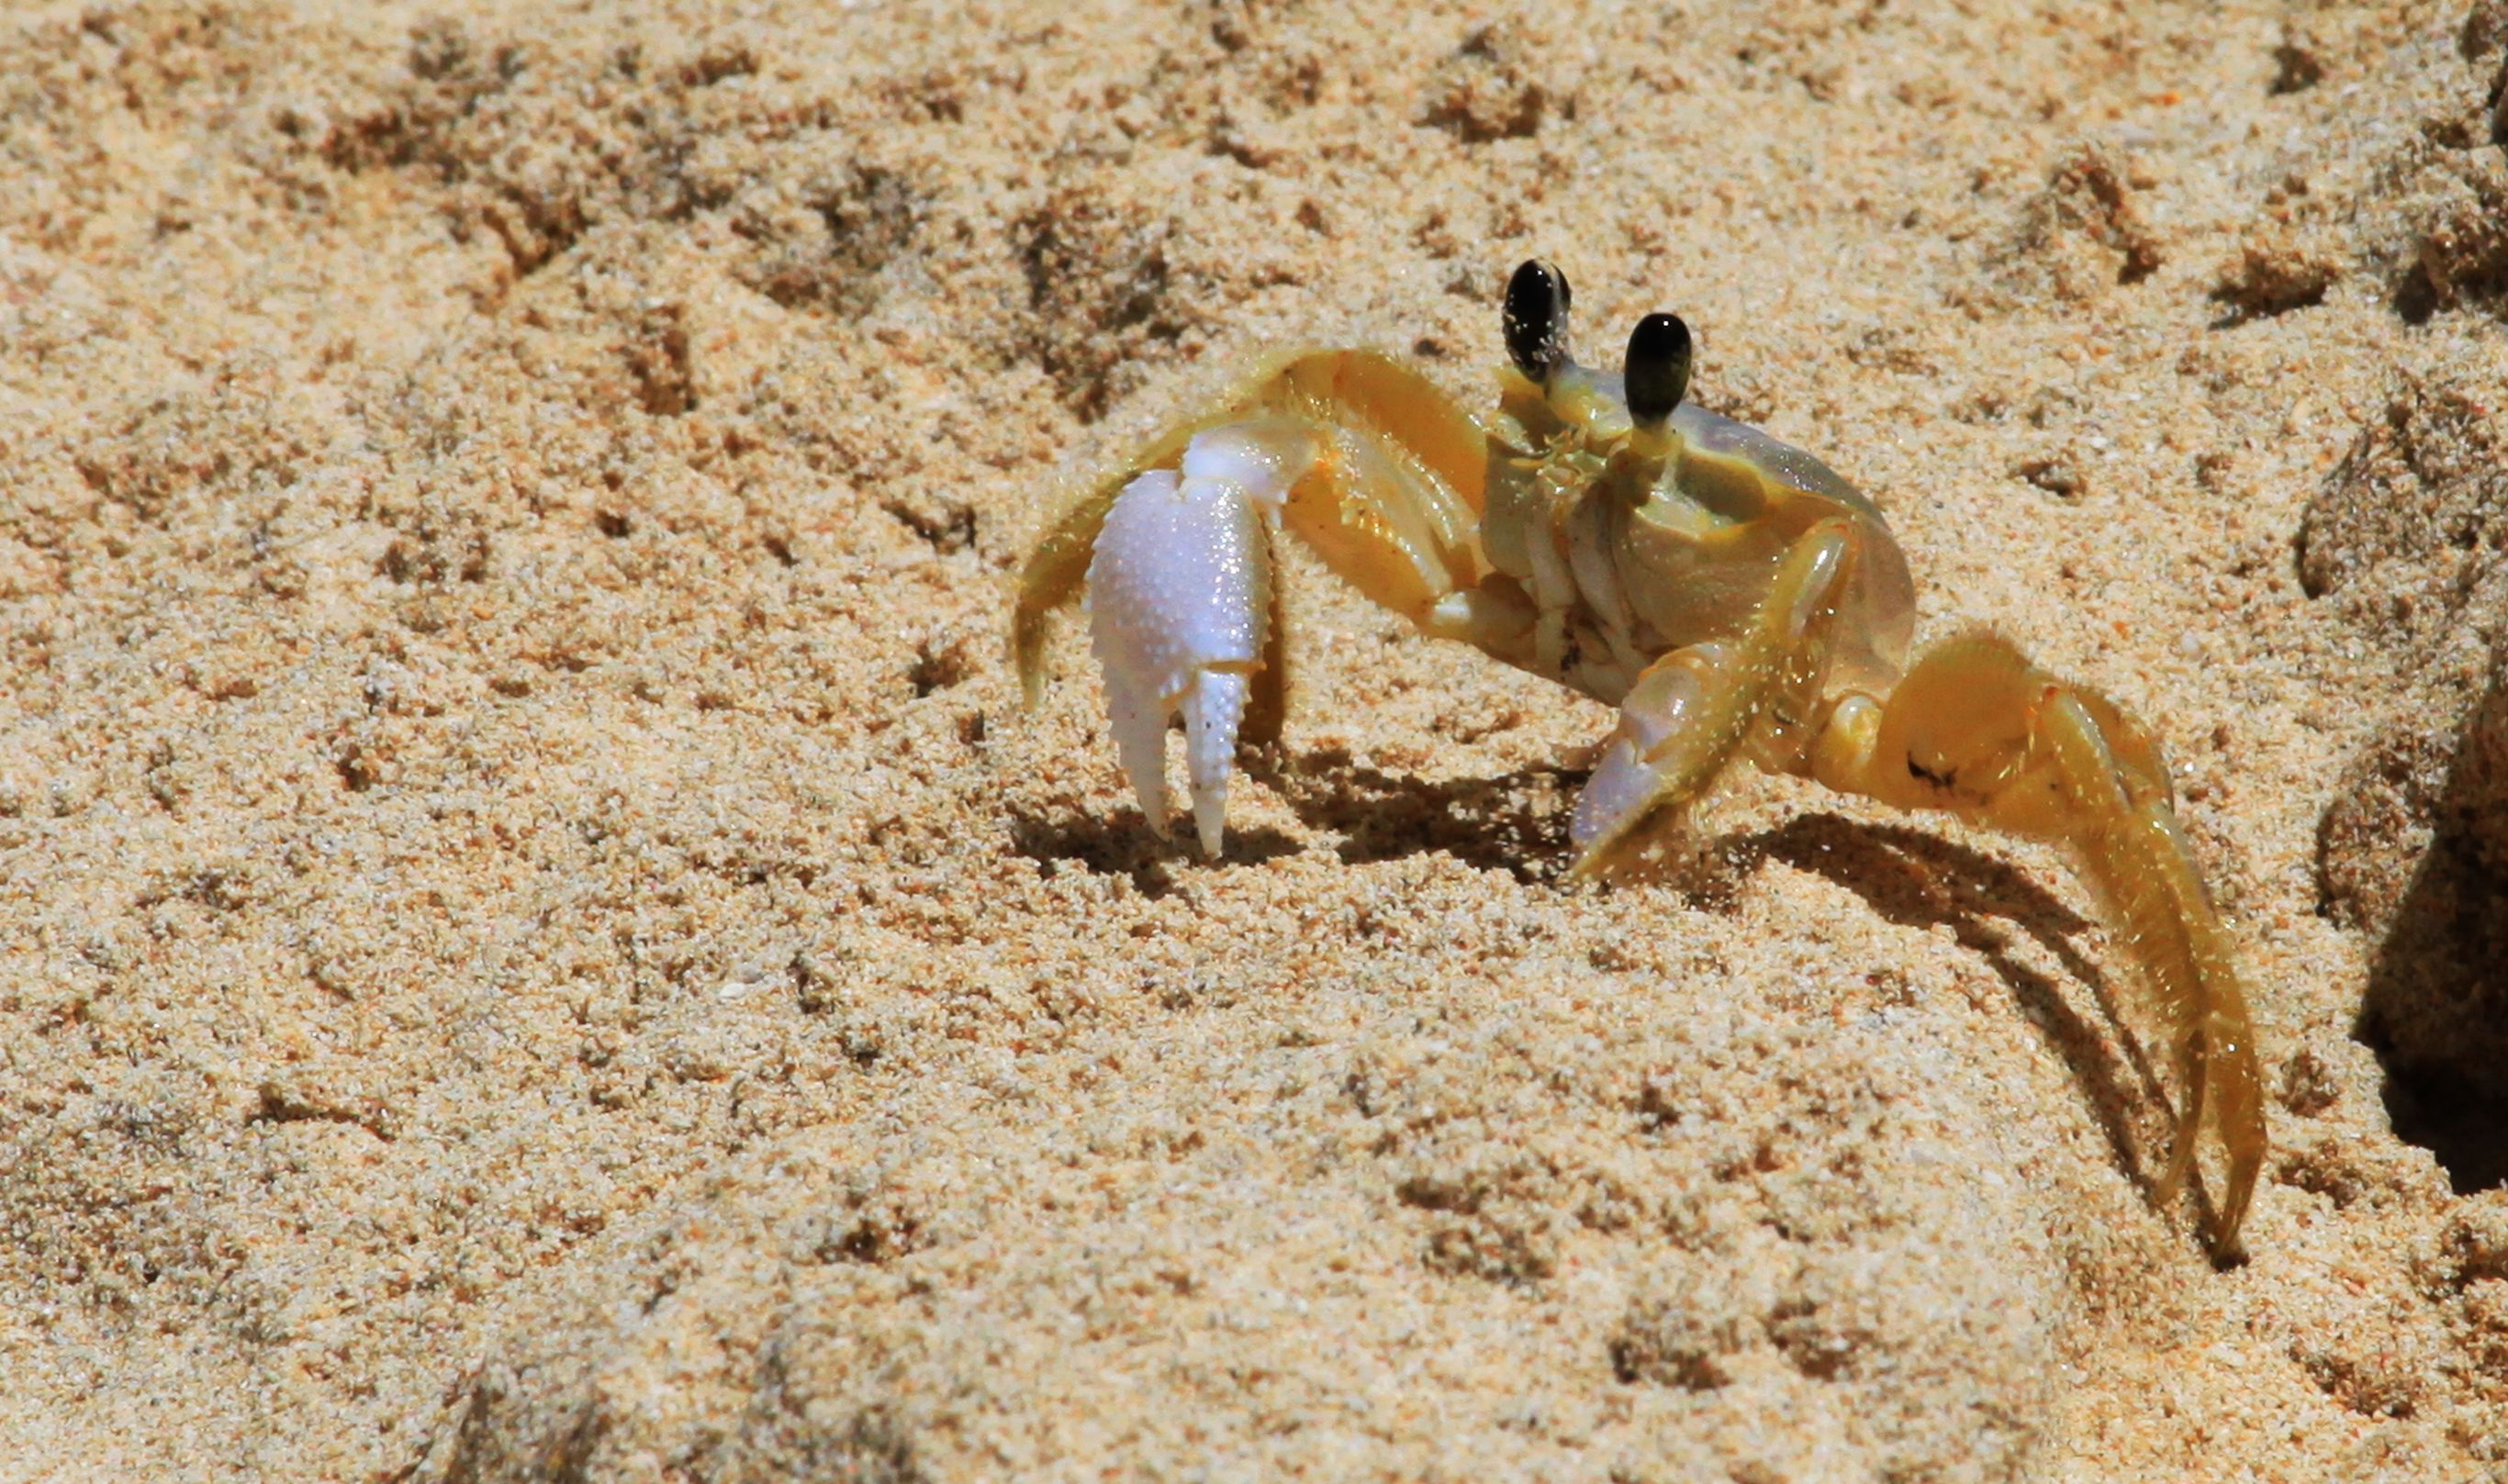  Beach Crab at Barbados